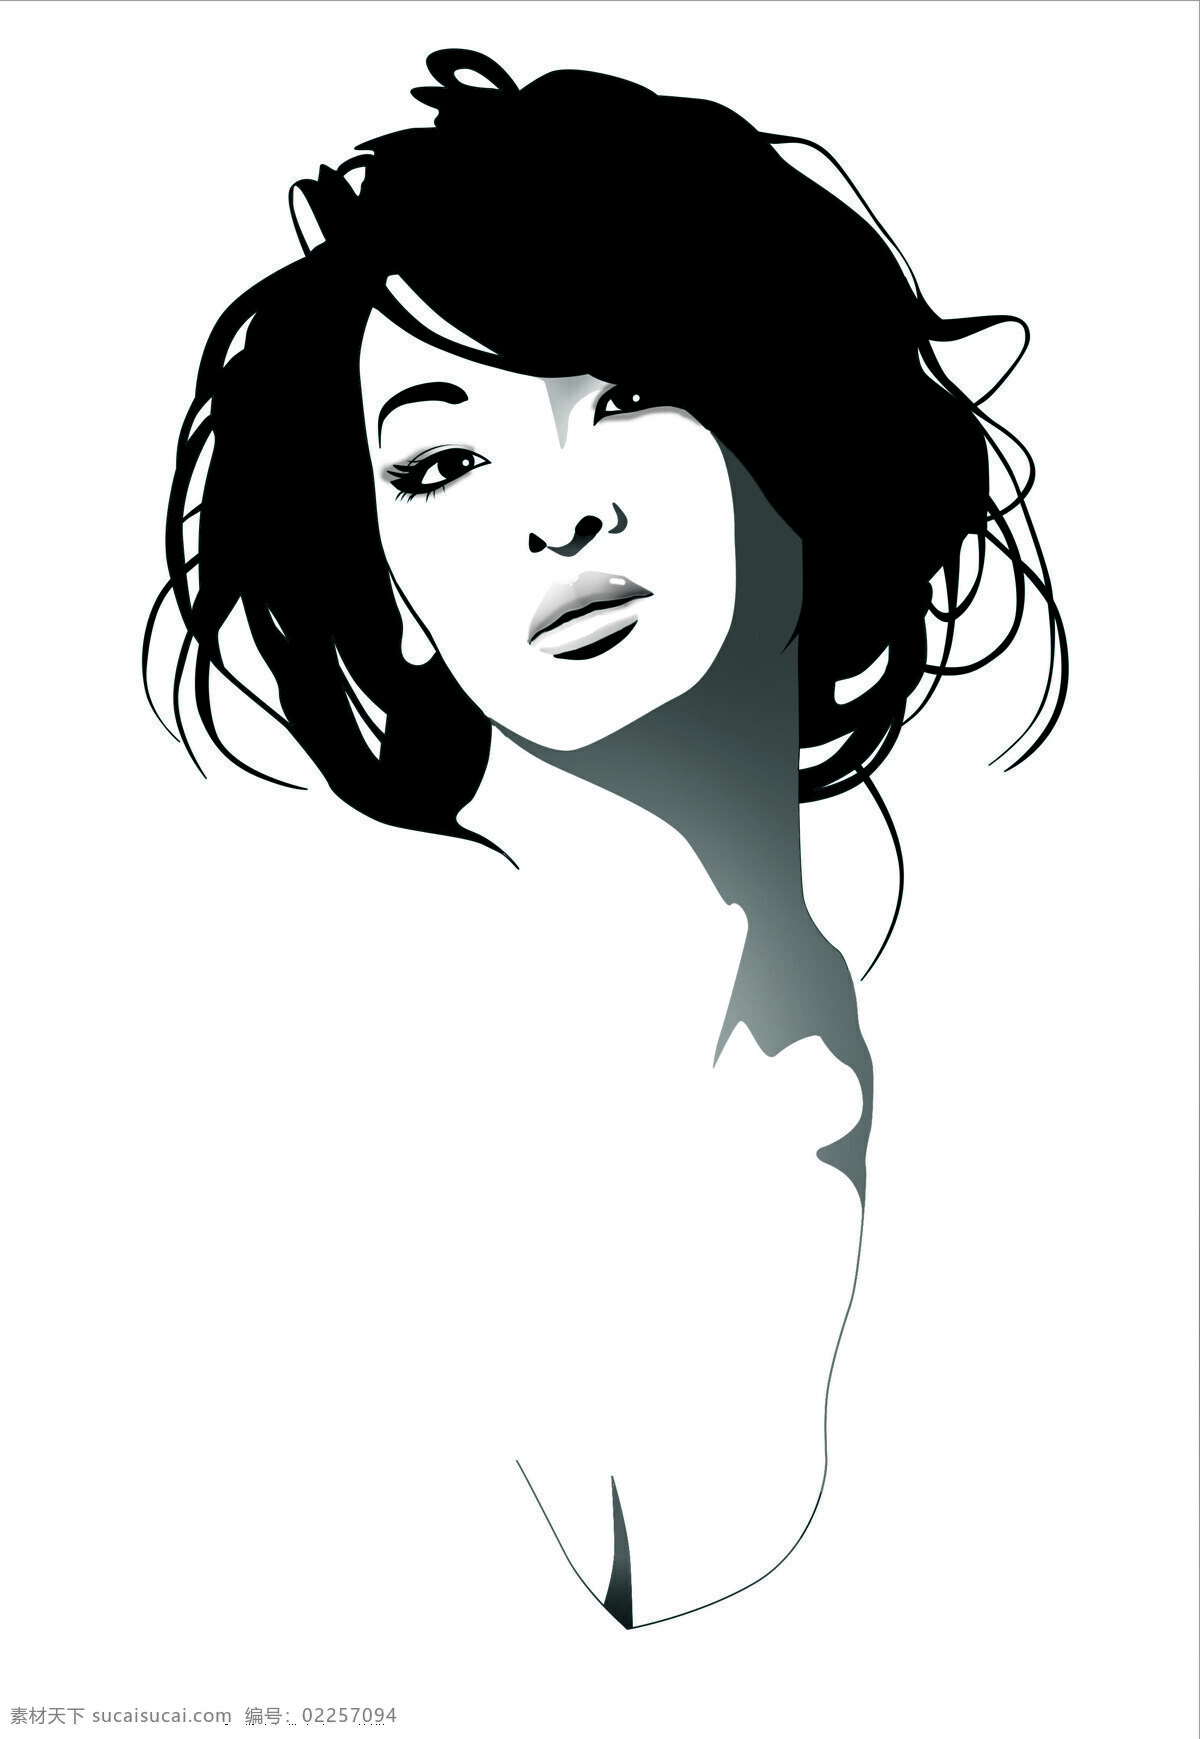 性感模特 性感 模特 台湾模特 黑白插画 时尚插画 时尚 潮流 动漫人物 动漫动画